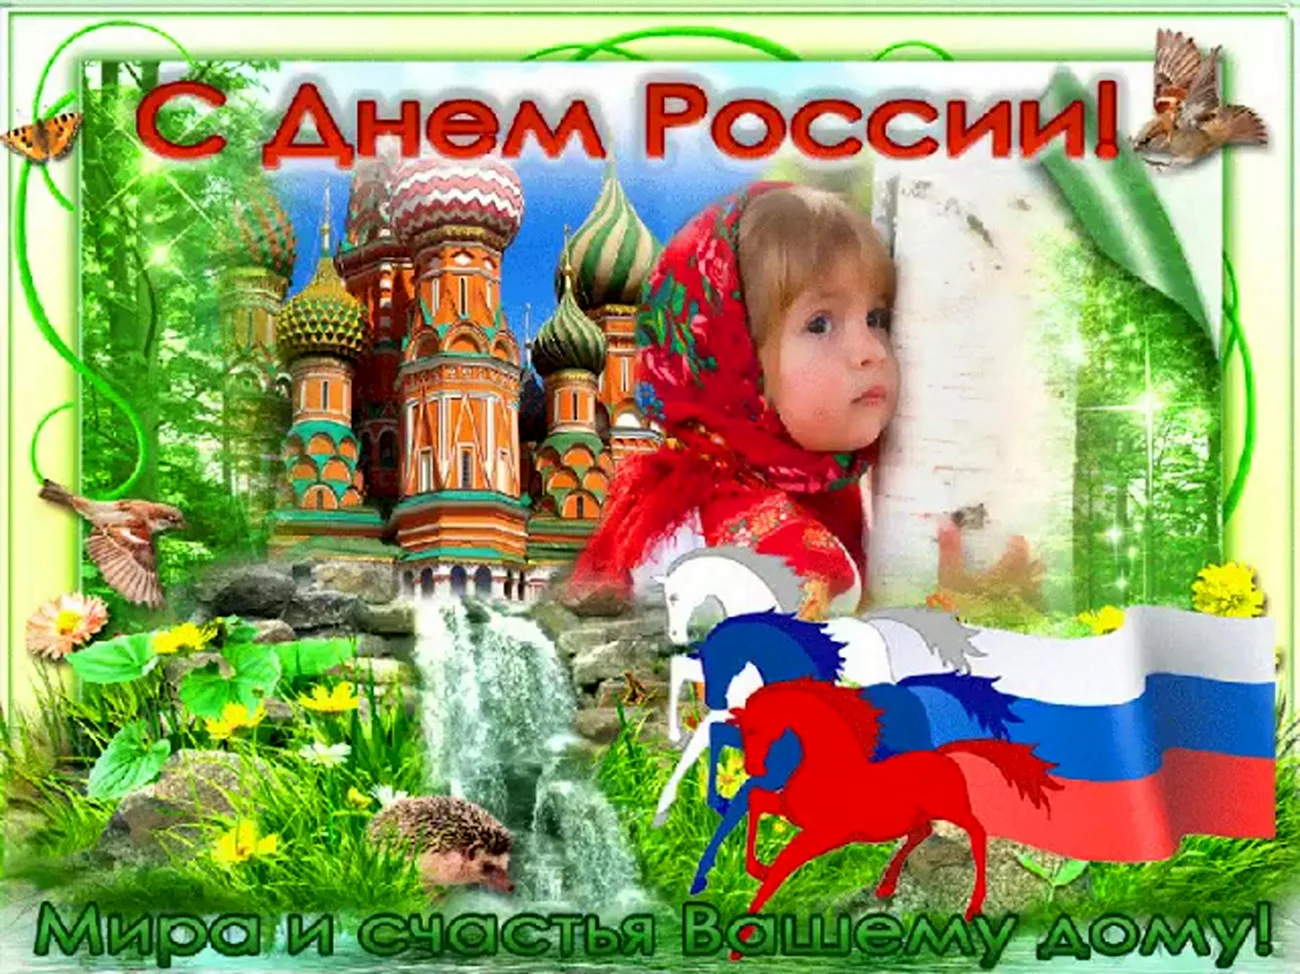 12 Июня день России. Поздравление